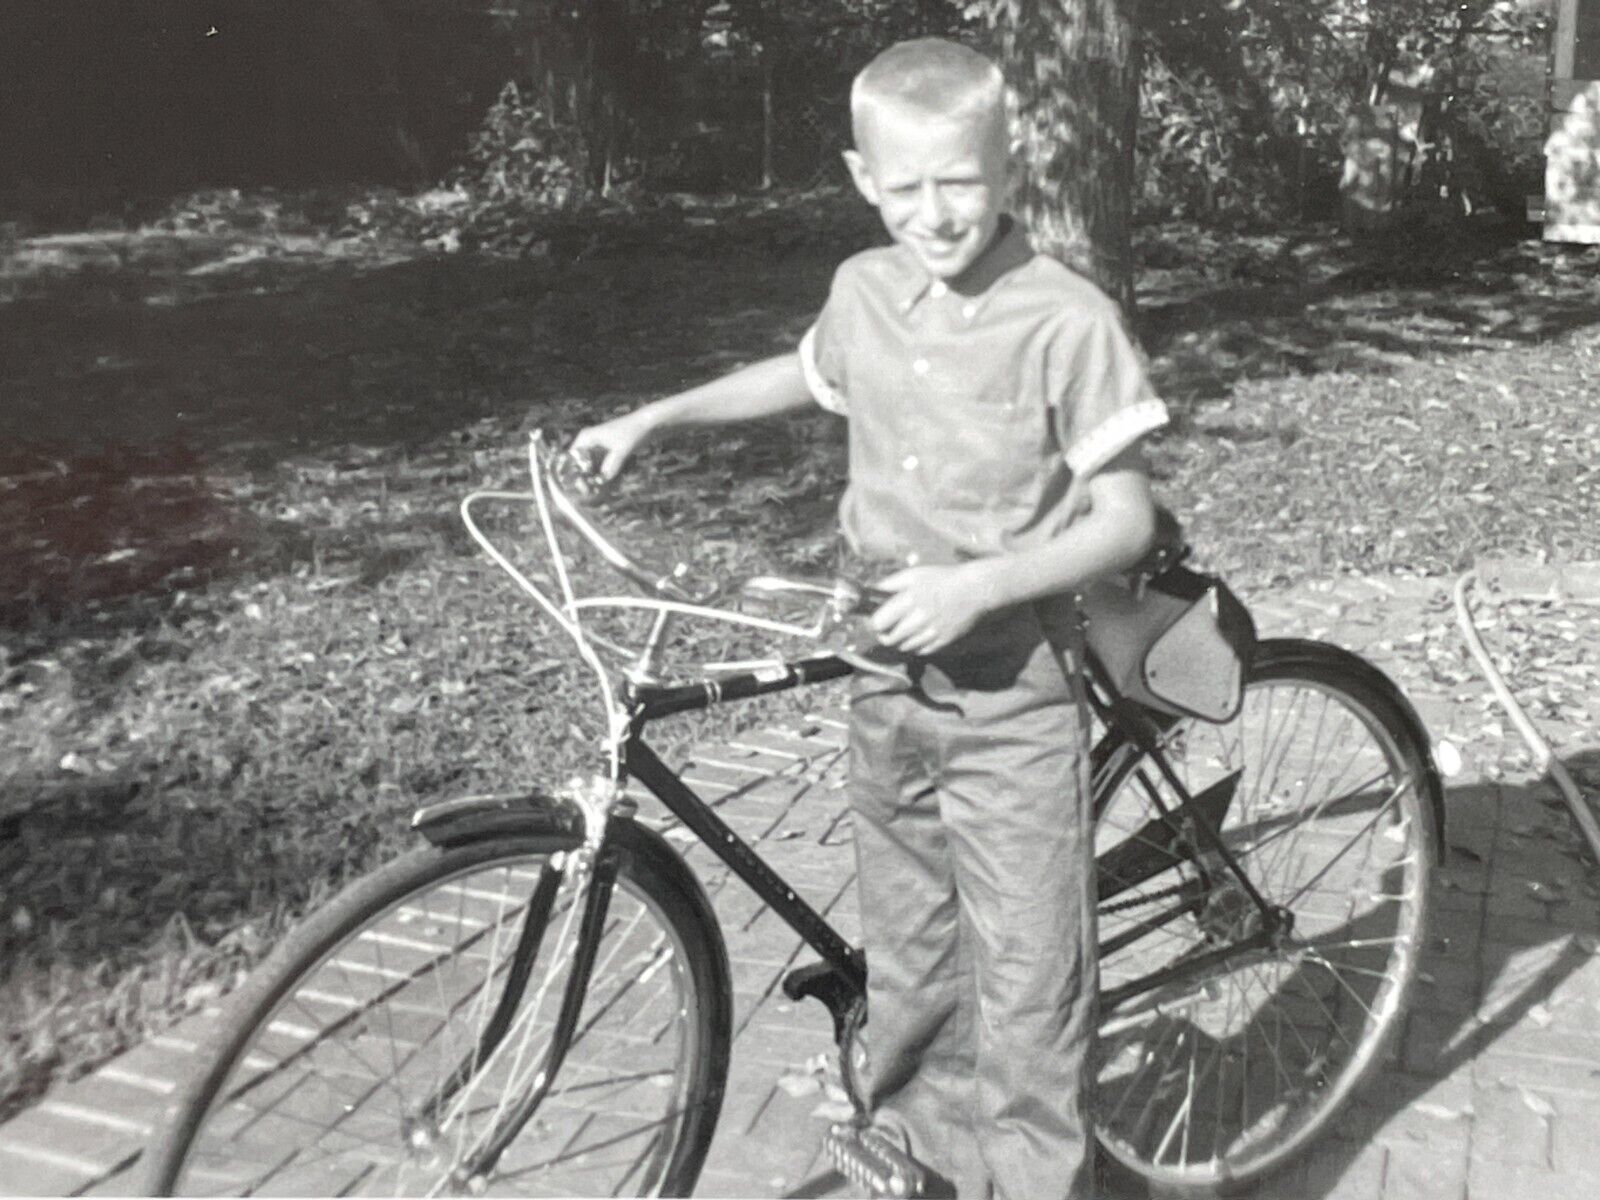 KG Photograph 1960 Boy Walking Bicycle Bike Portrait